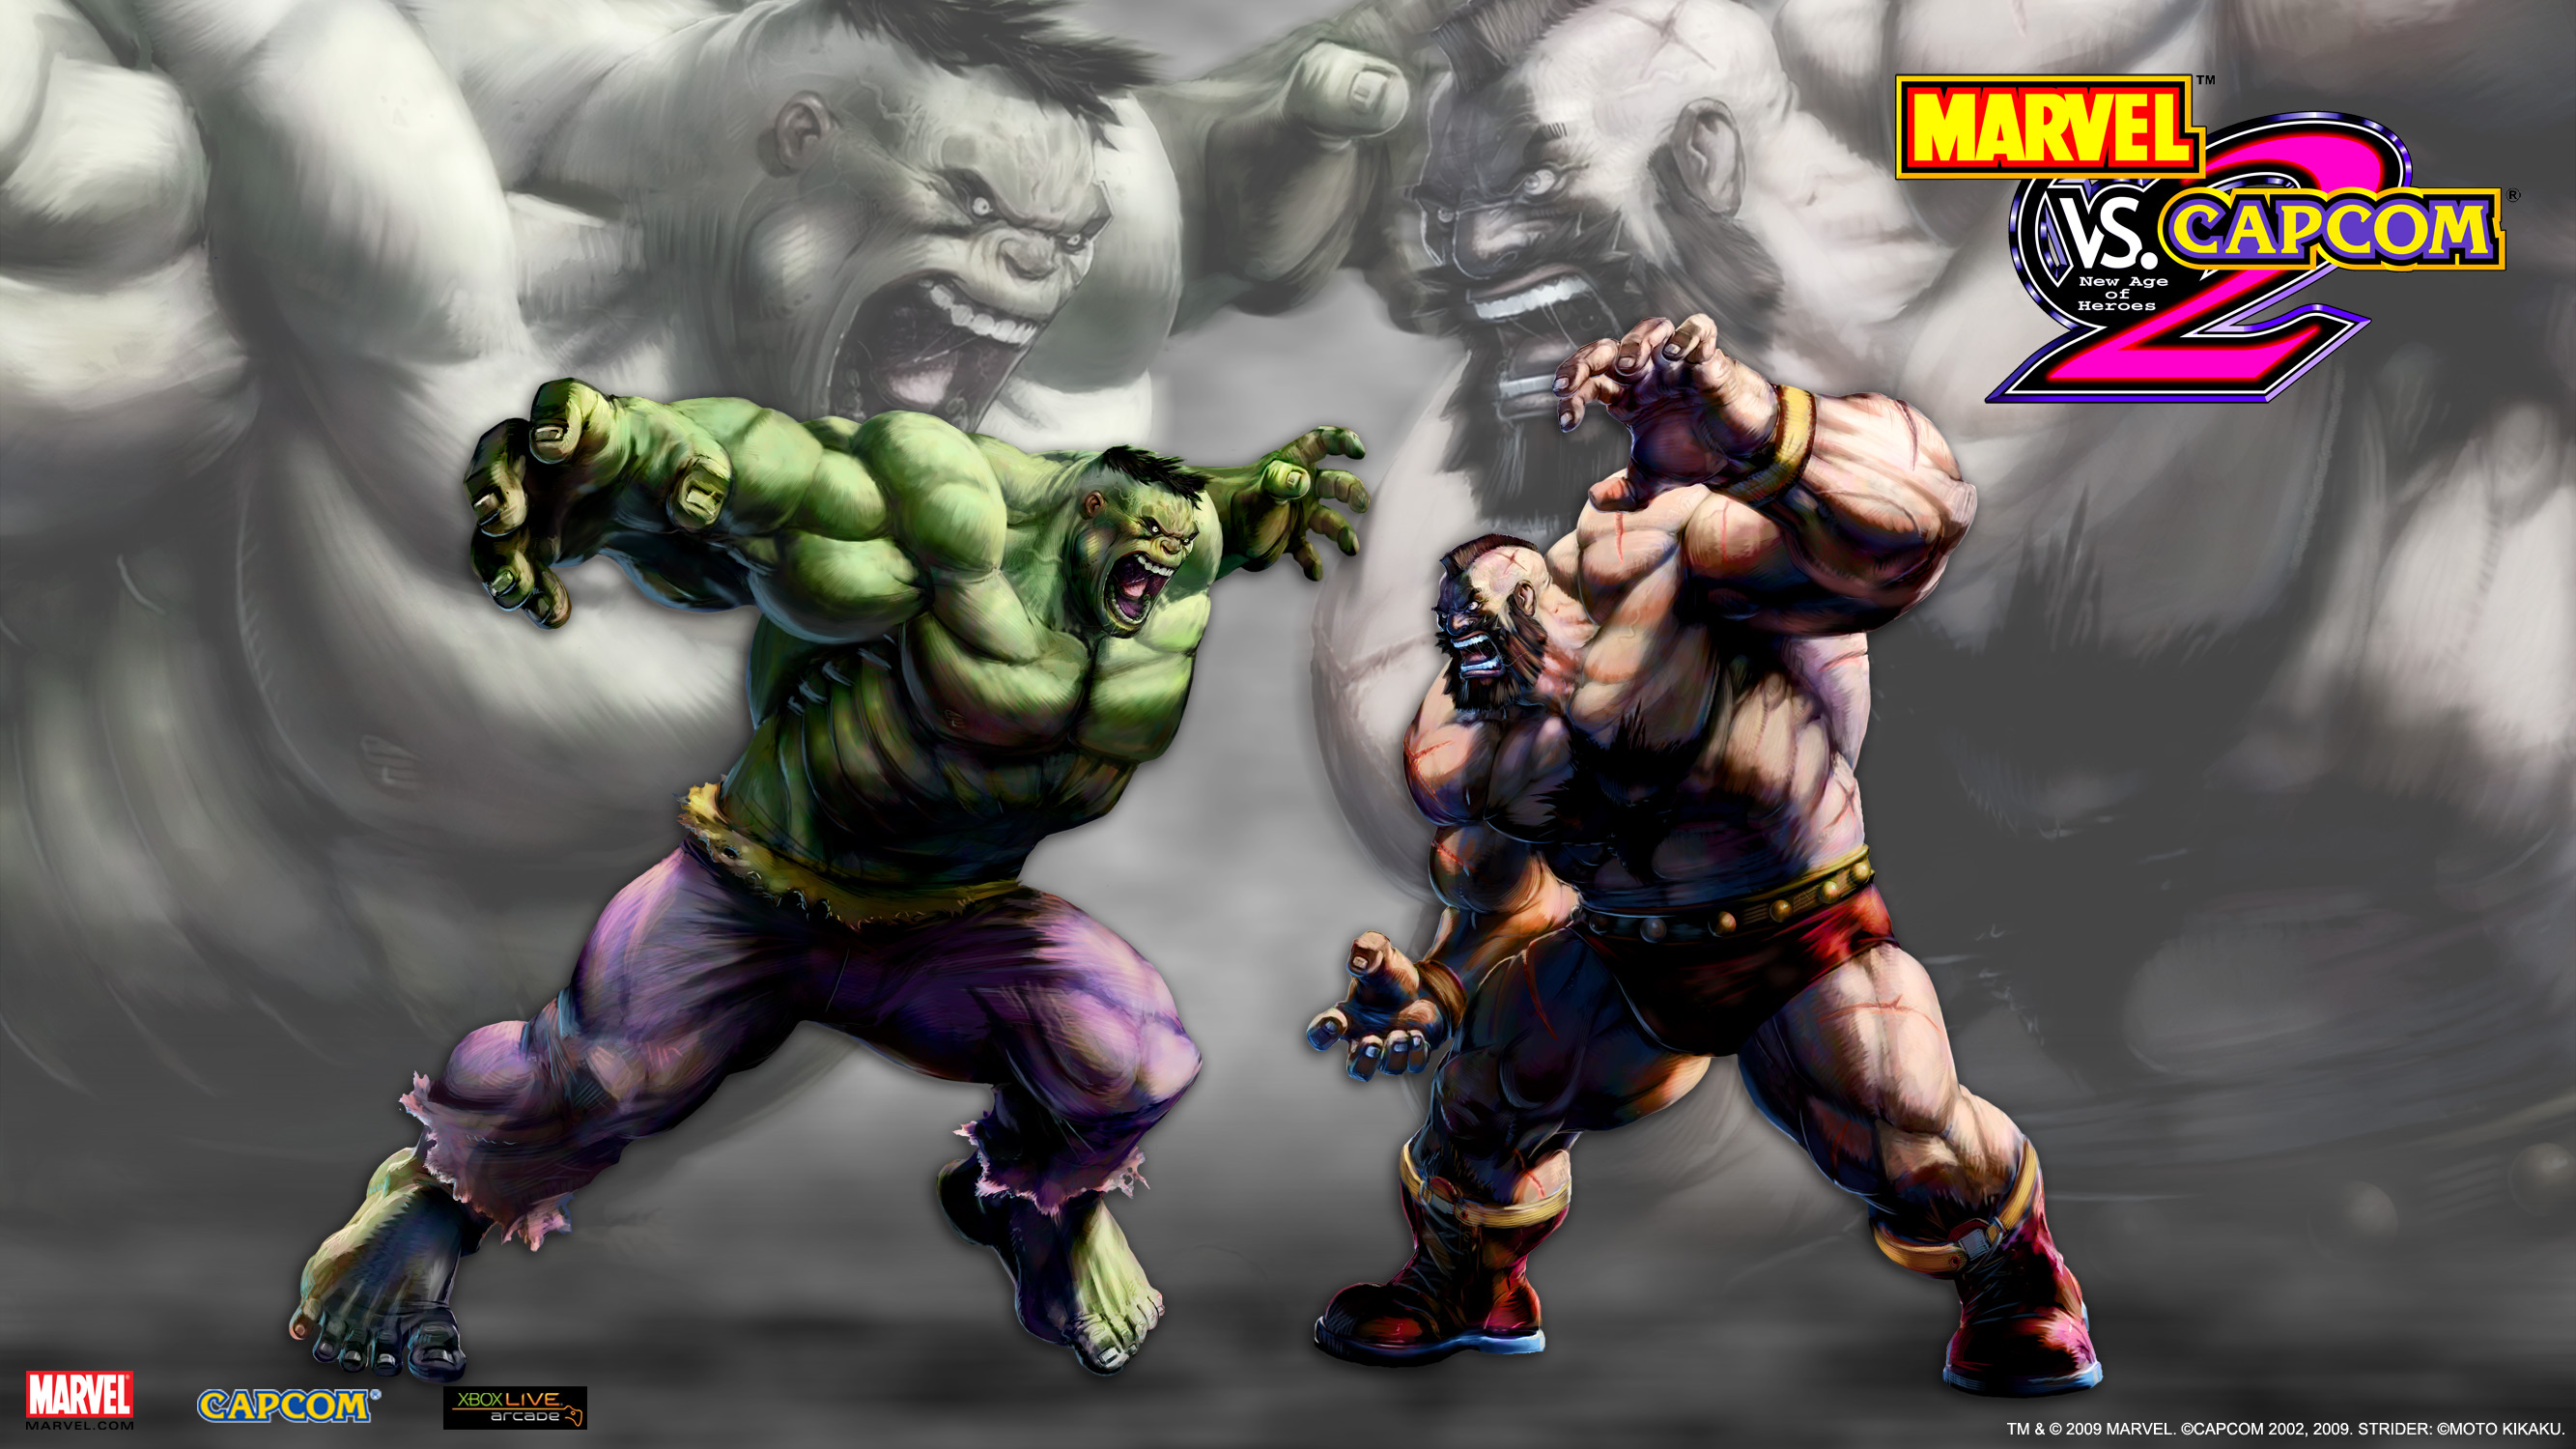 Marvel vs. Capcom 2 version for PC